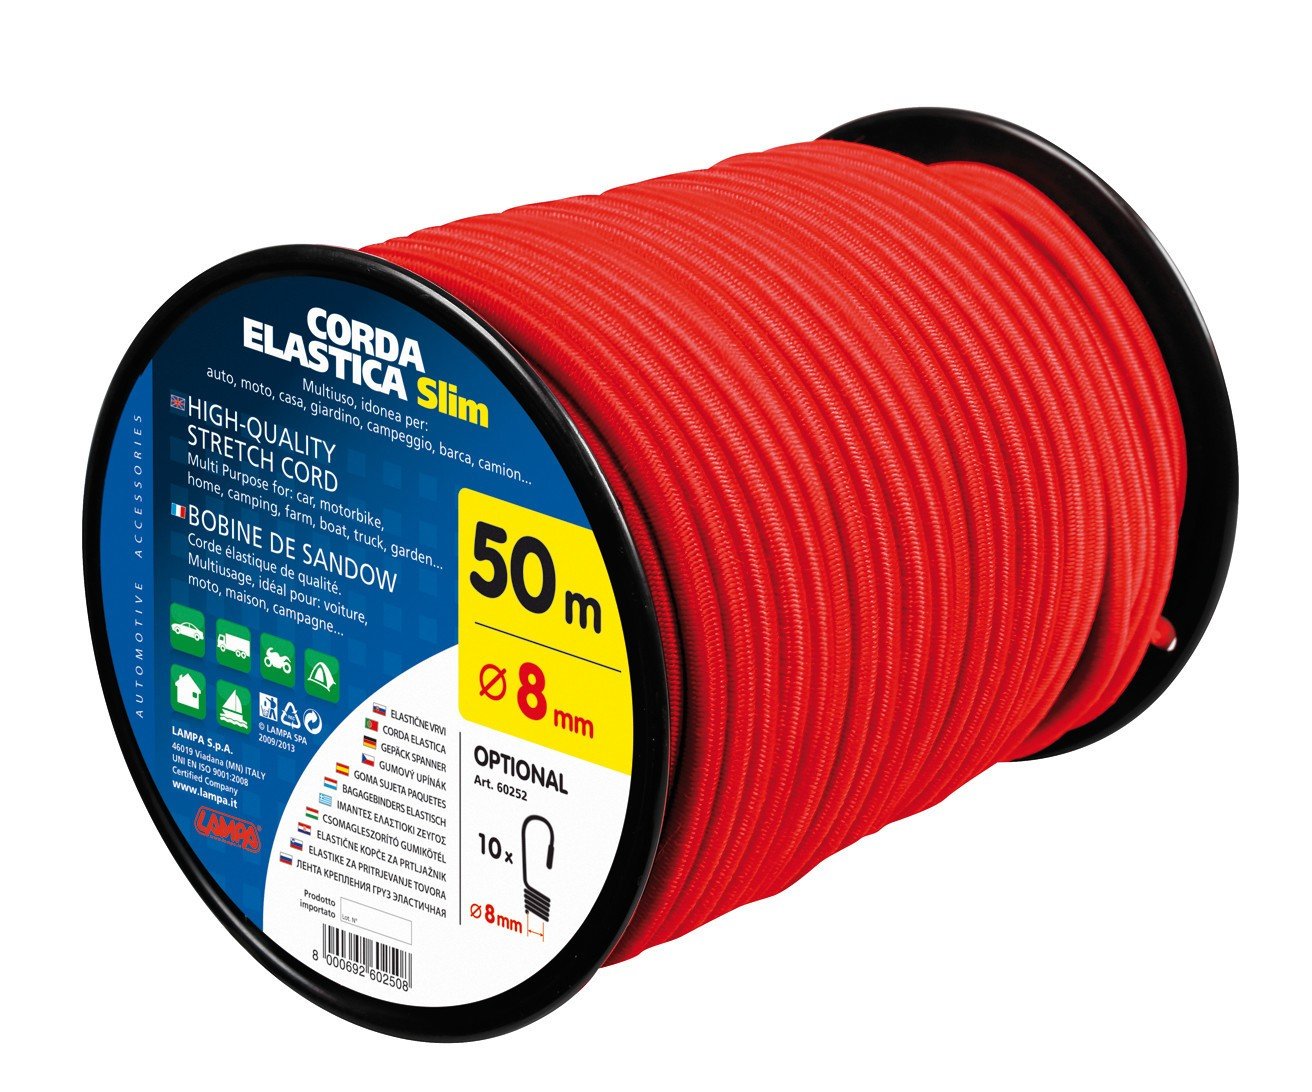 Corda elastica in bobina, rosso - 8 mm - 50 m